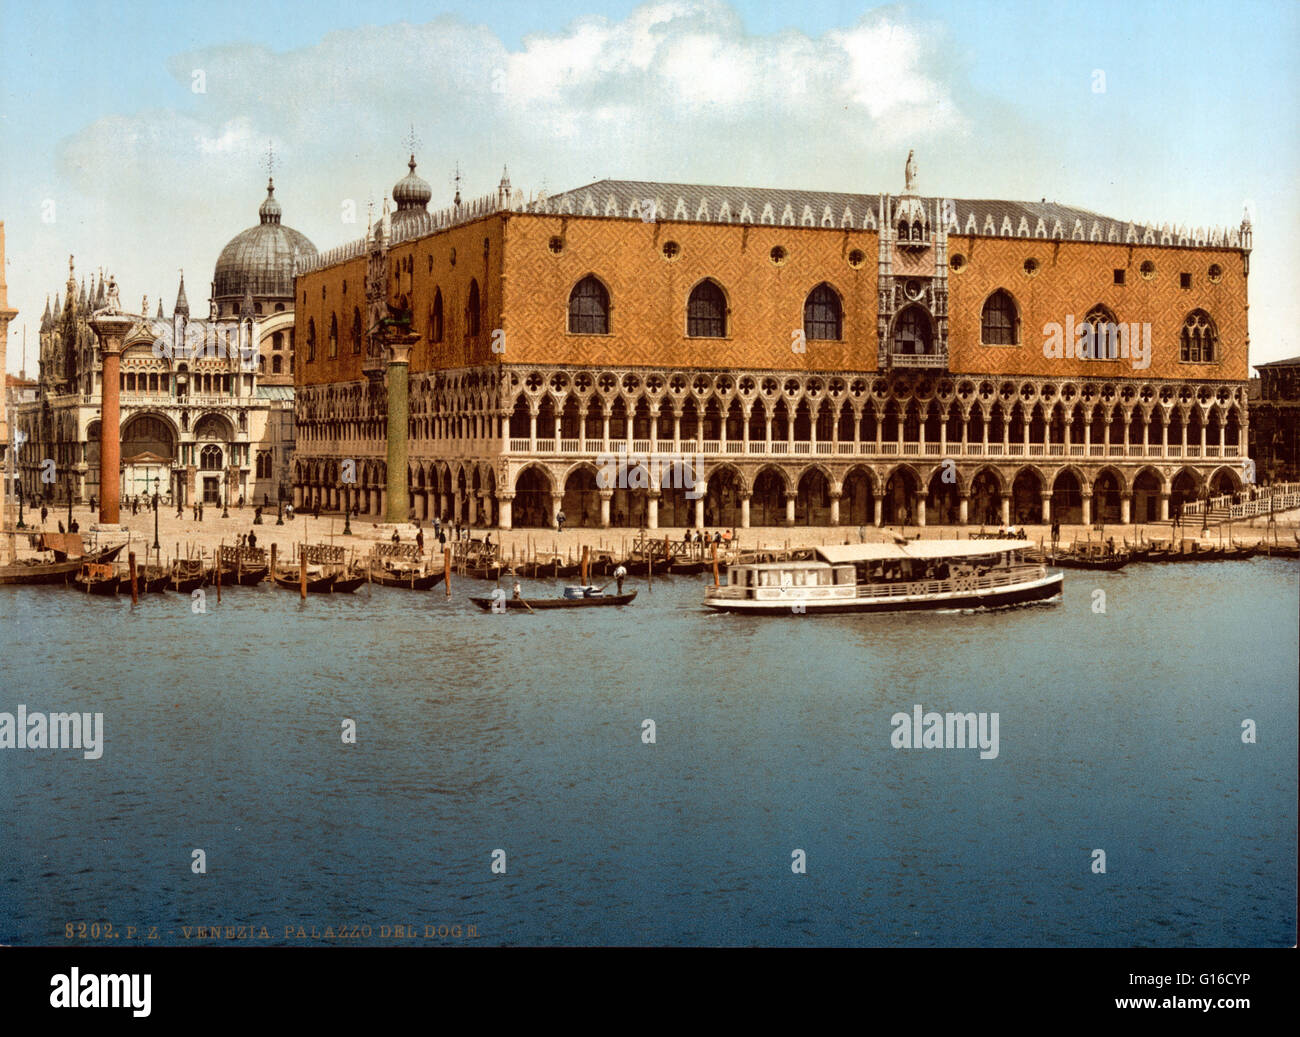 Il Palazzo Ducale è un palazzo costruito in stile gotico veneziano, e uno dei principali monumenti della città di Venezia. La parte più antica del palazzo è la facciata Affacciato sulla laguna, i cui angoli sono decorate con trecento sculture di Filip Foto Stock